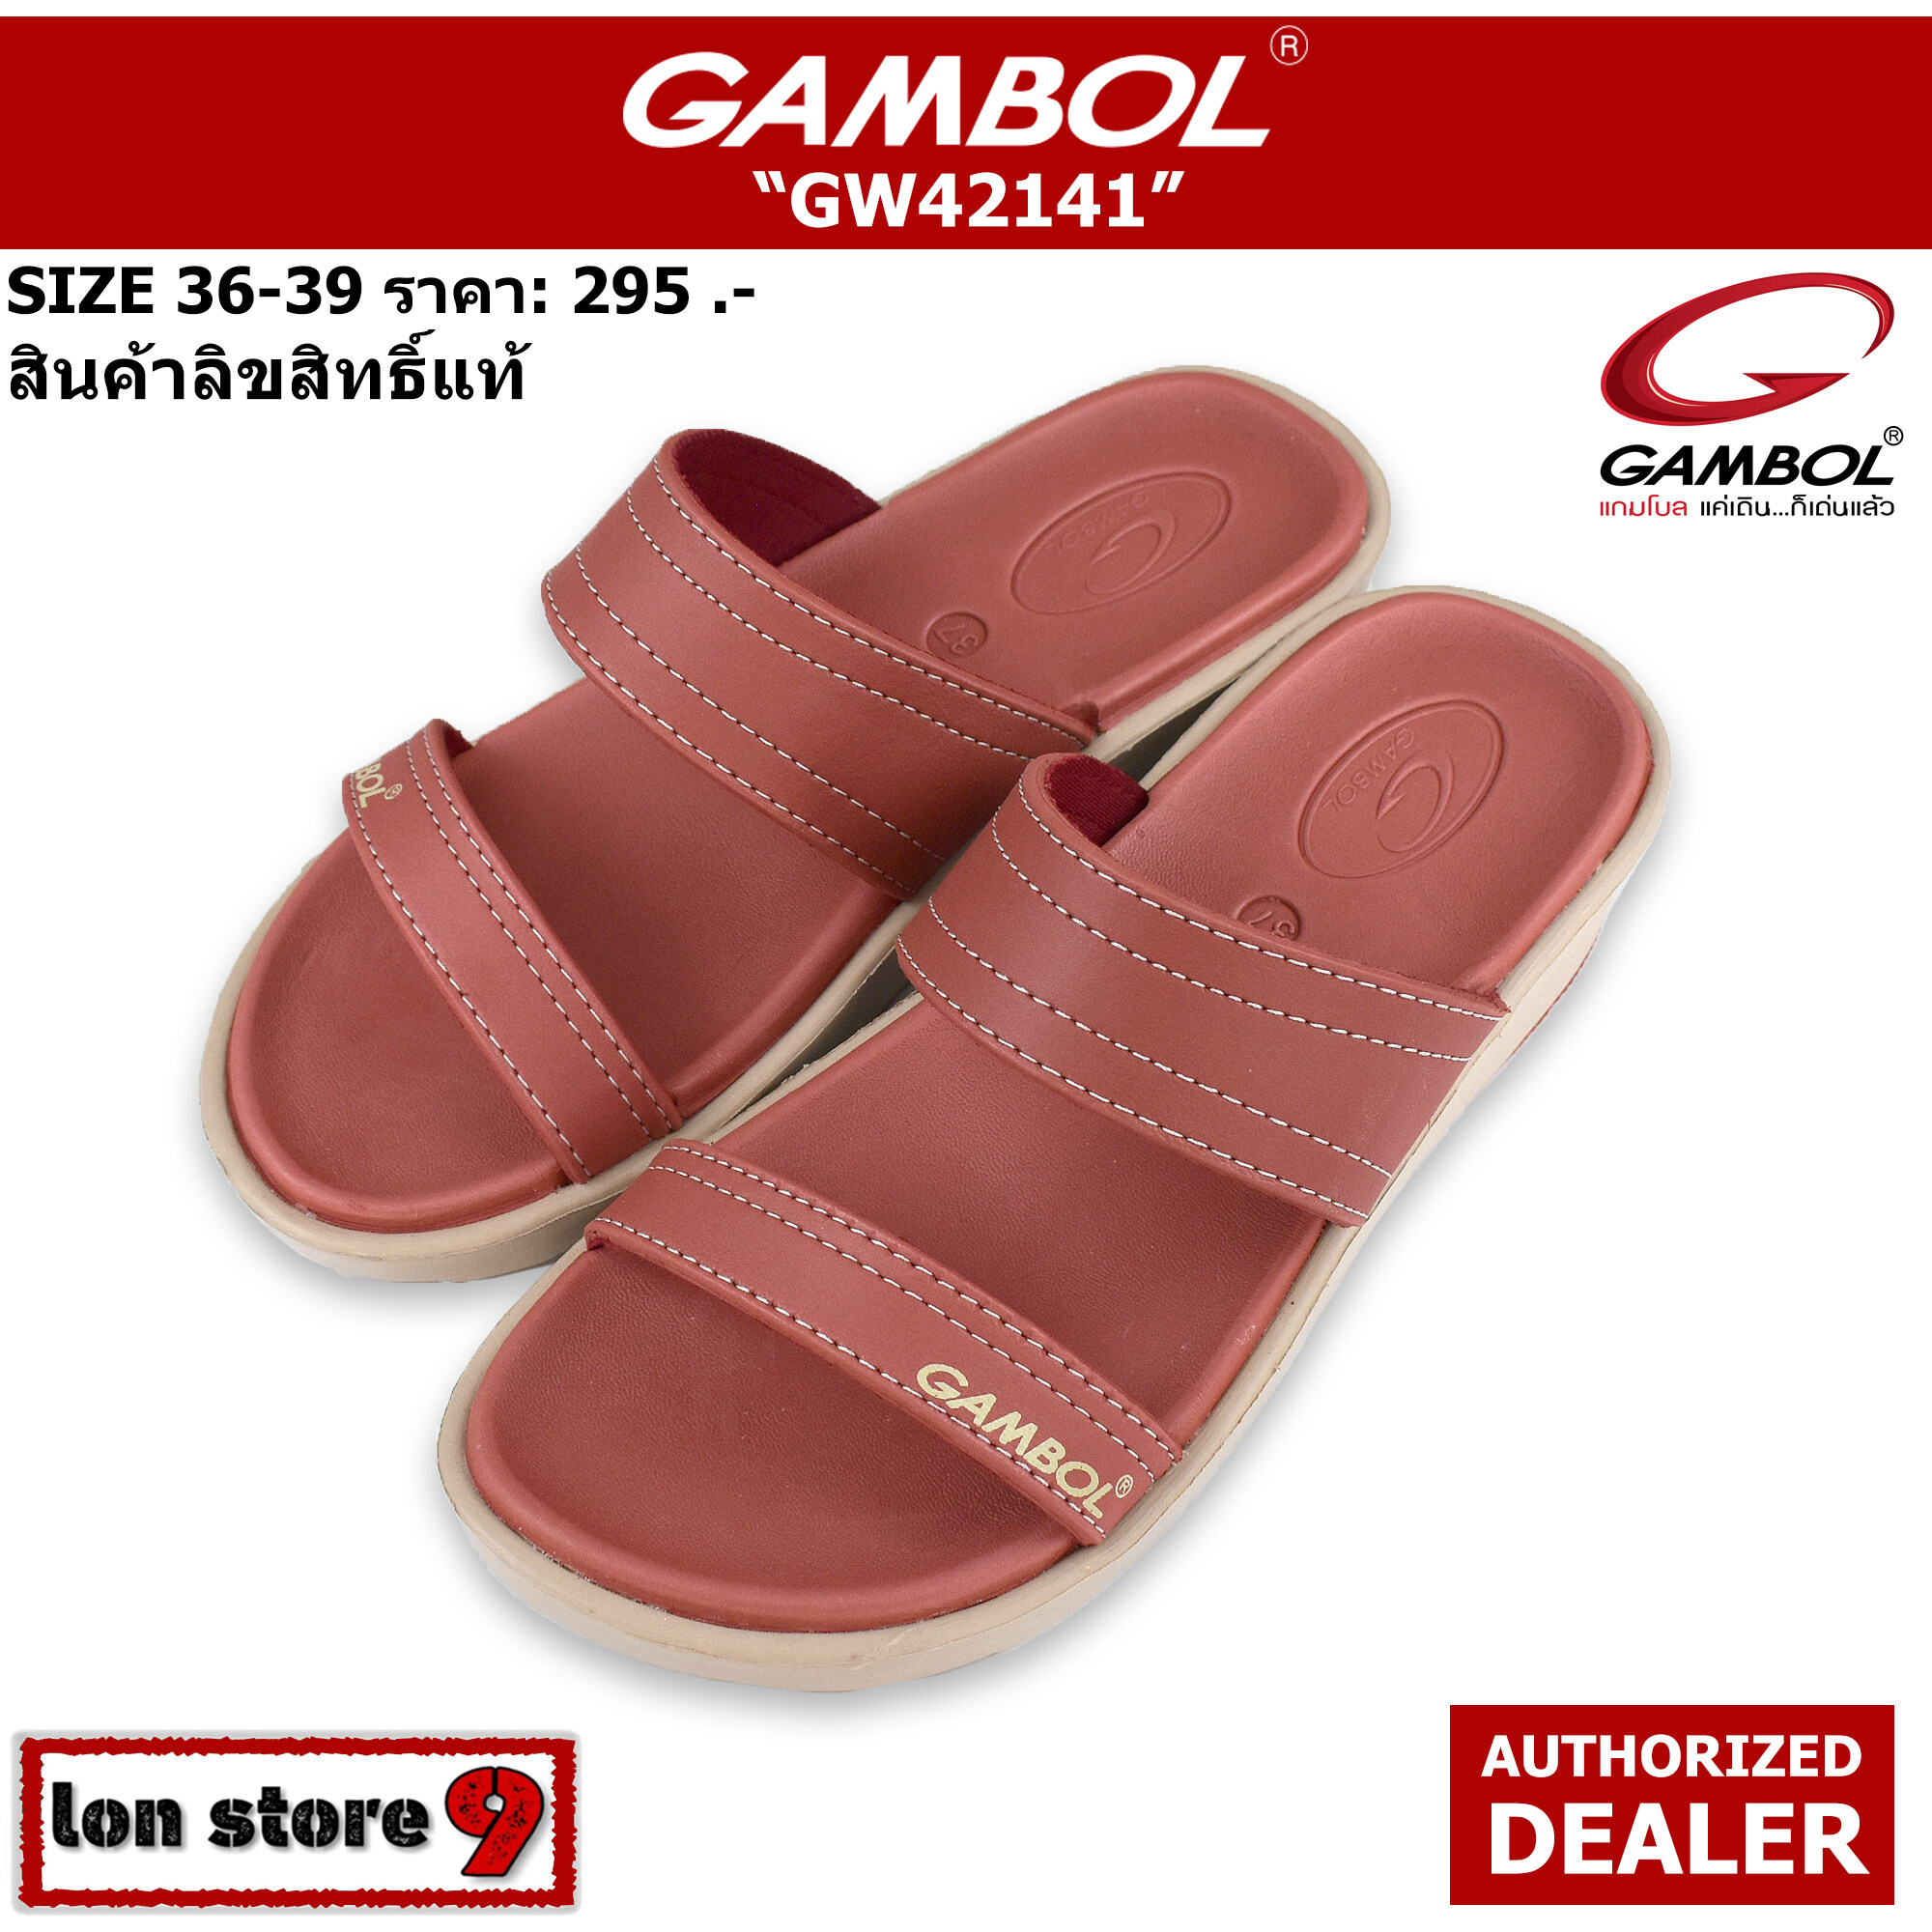 รองเท้าแตะแกมโบล gambol รุ่น GW42141 สีอิฐ ของแท้ 100% SIZE 36-39